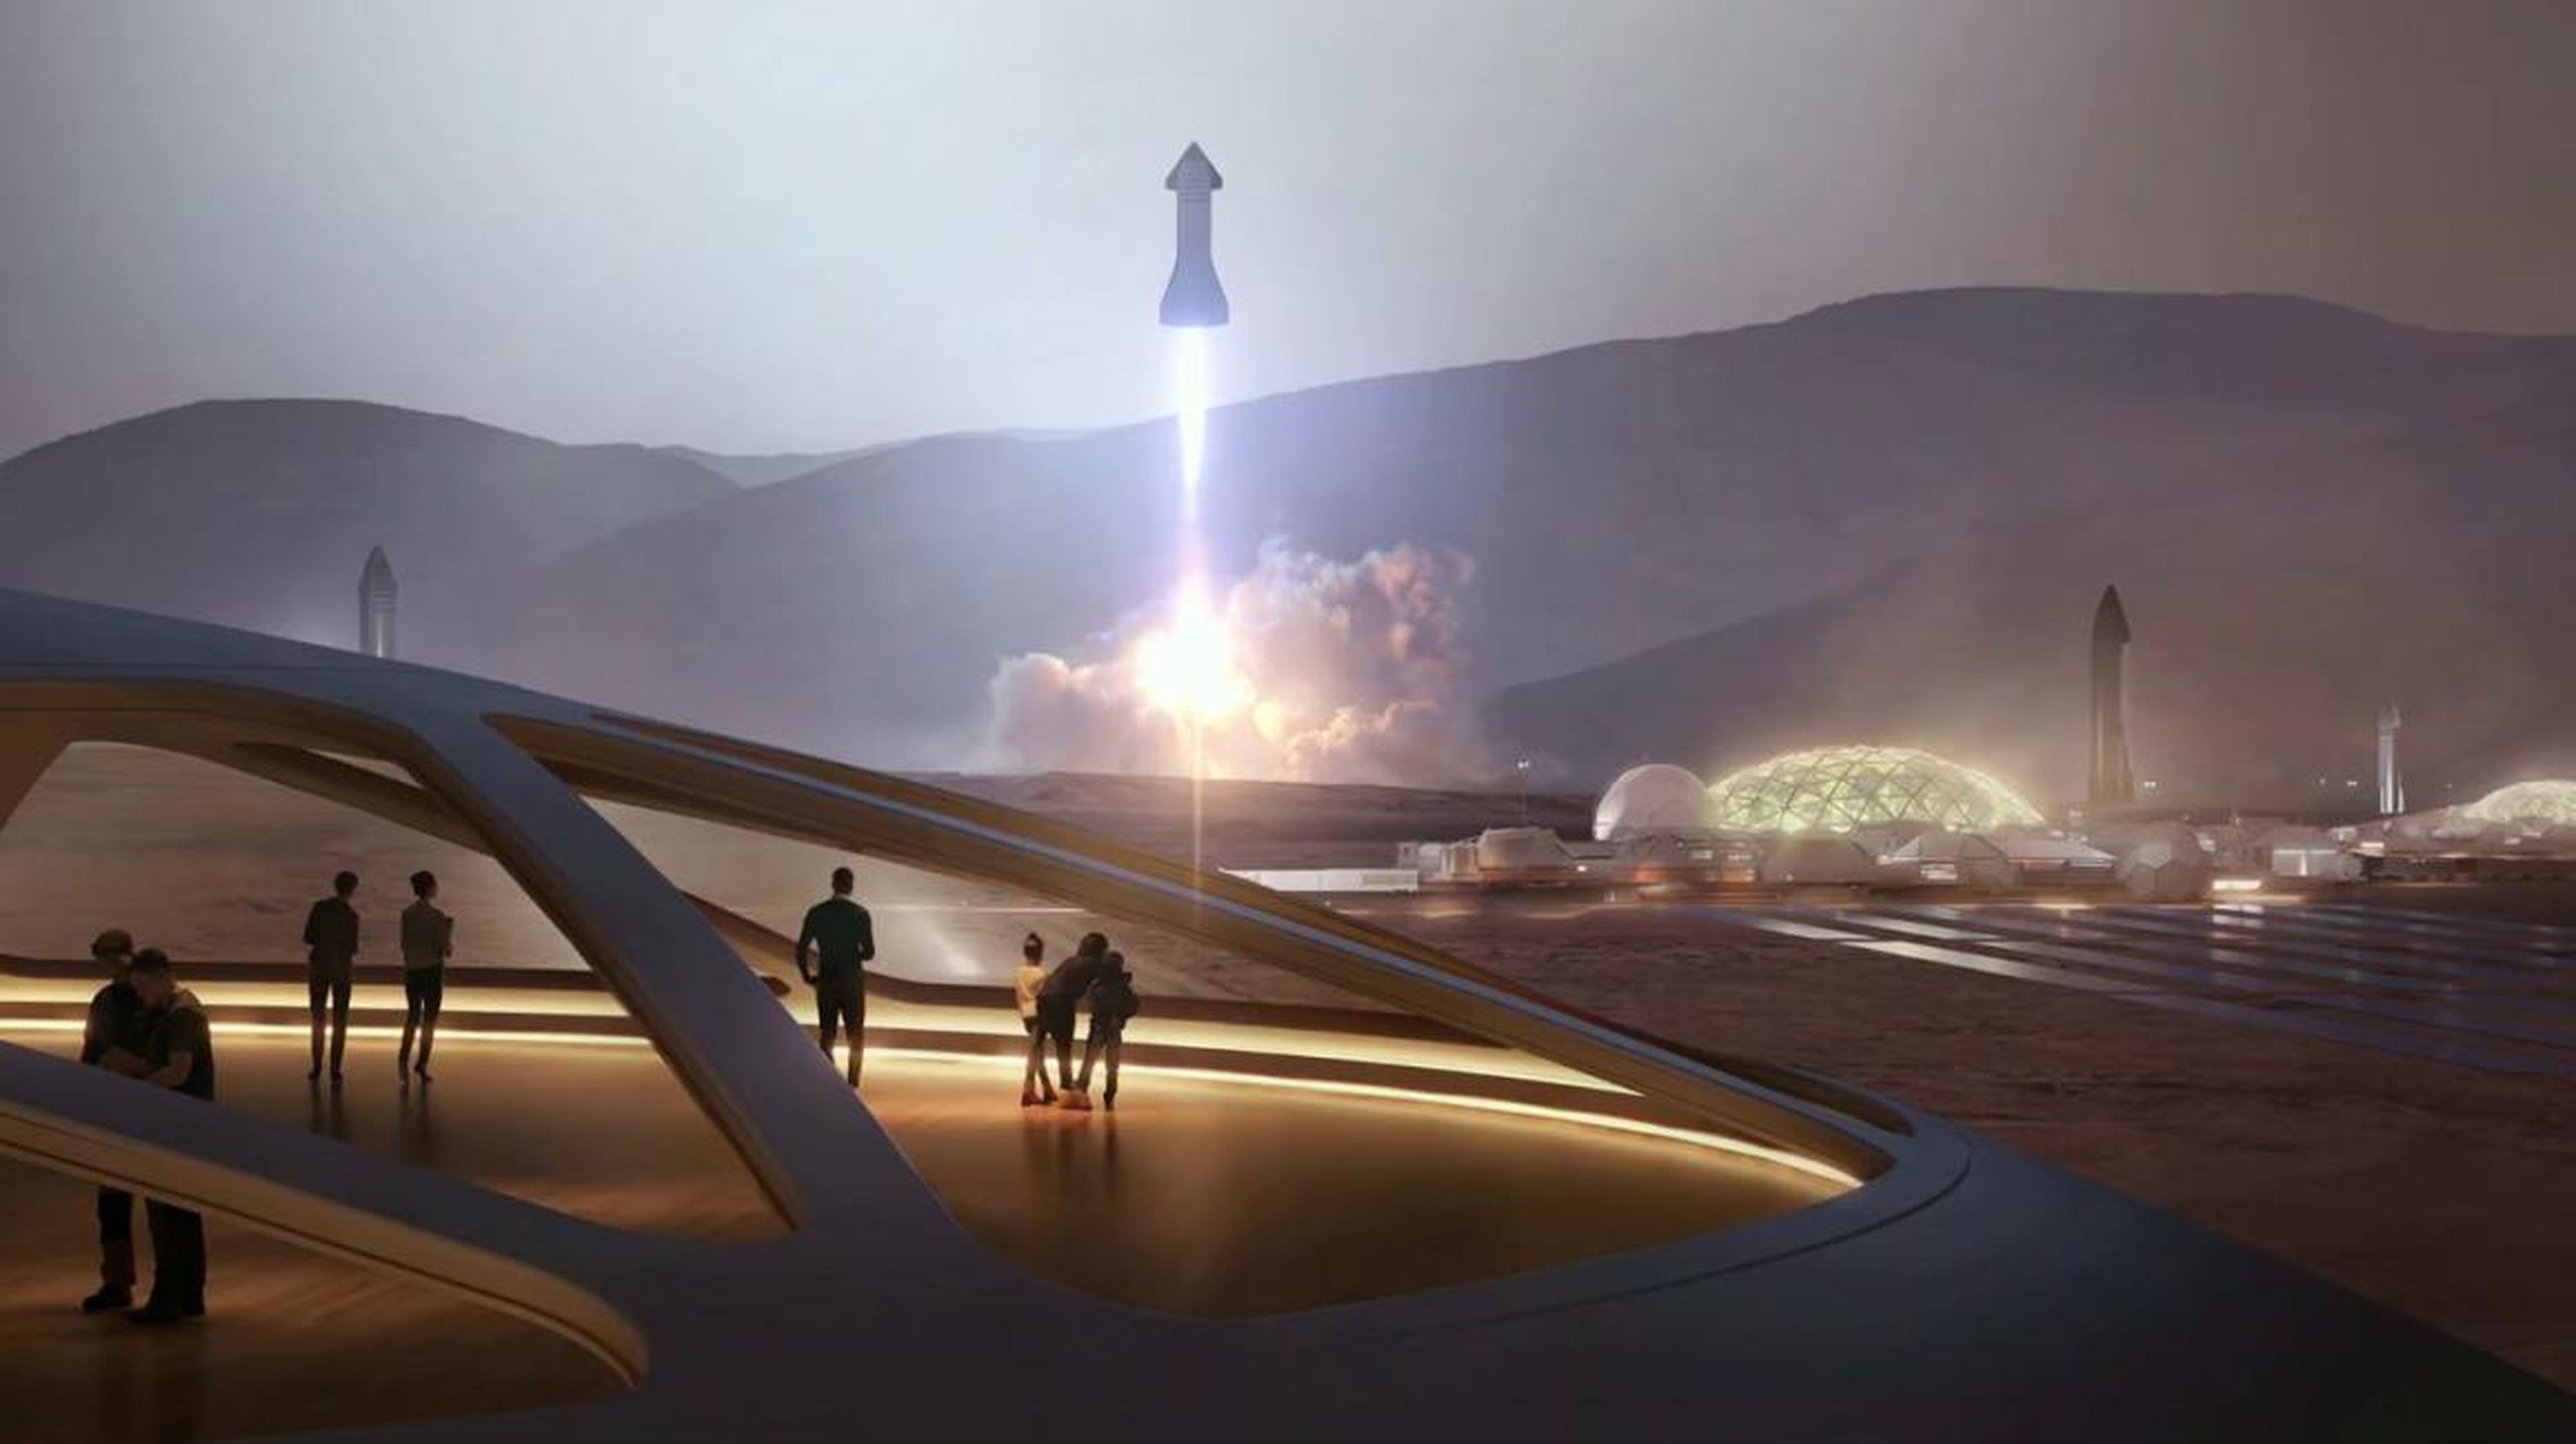 Una ilustración del sistema de cohetes de la nave espacial SpaceX que despega de una ciudad de Marte y regresa a la Tierra.